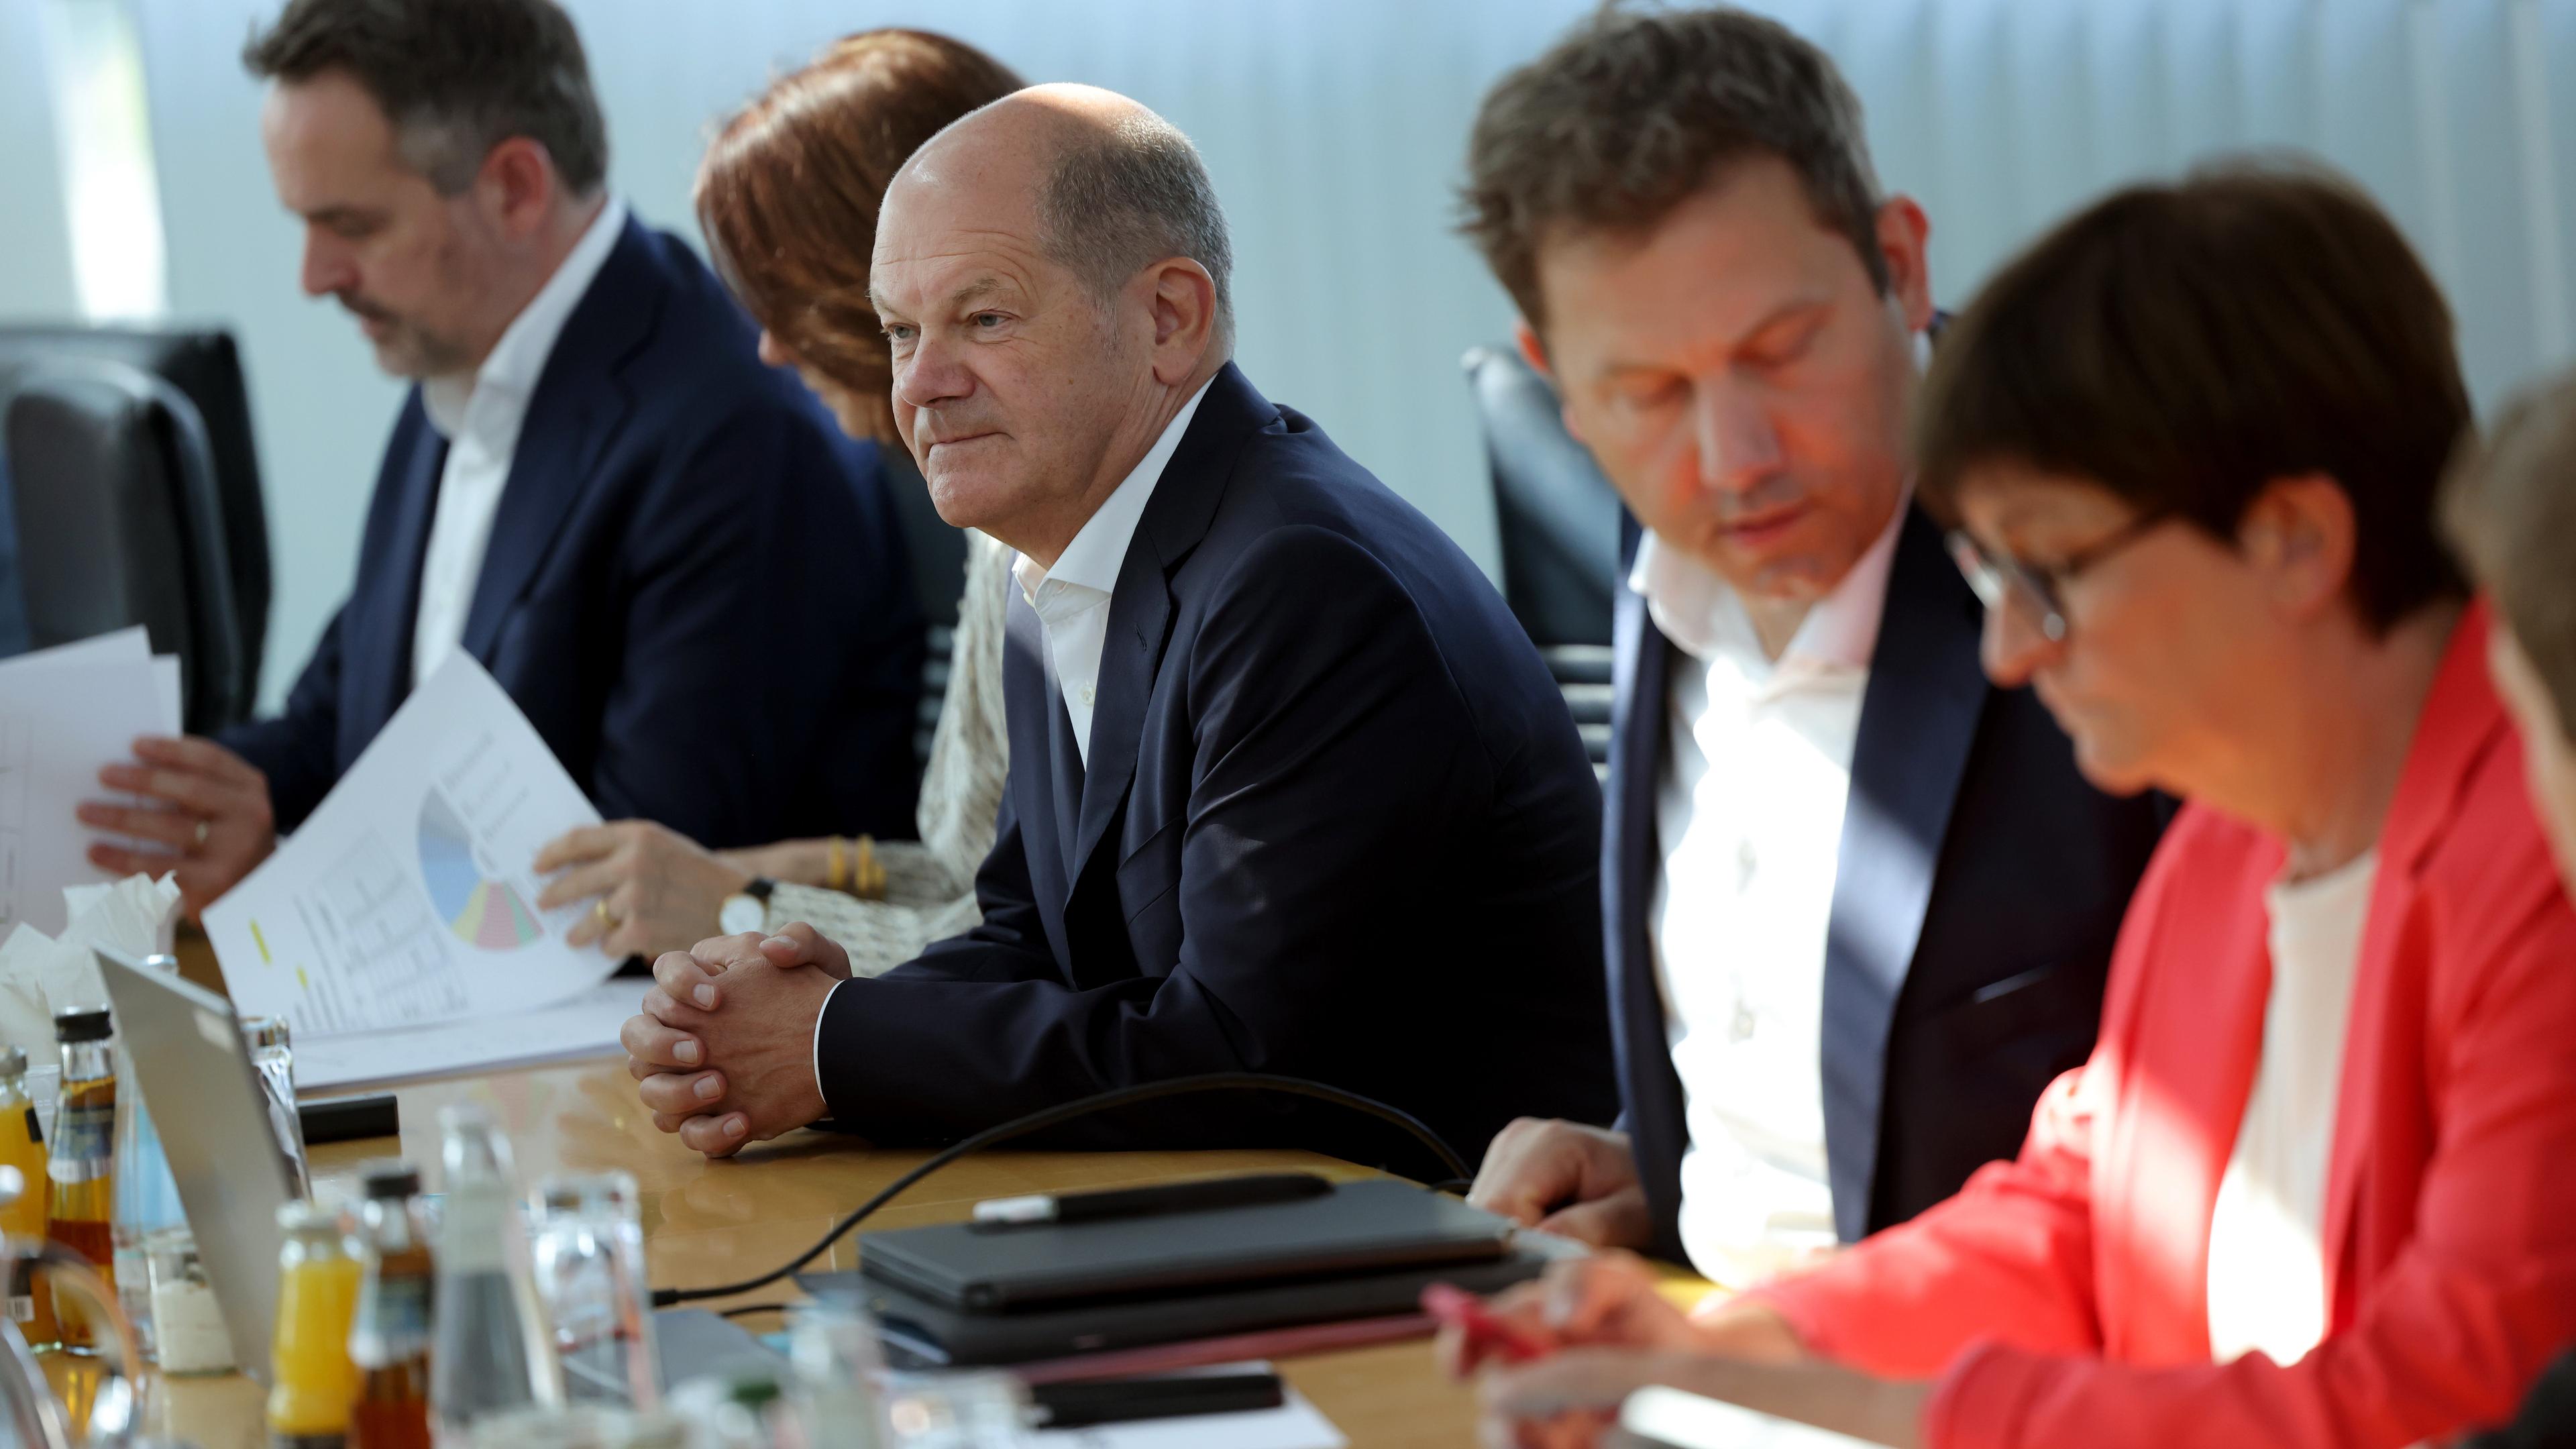 Olaf Scholz bei einem Treffen der SPD nach den EU-Wahlergebnissen